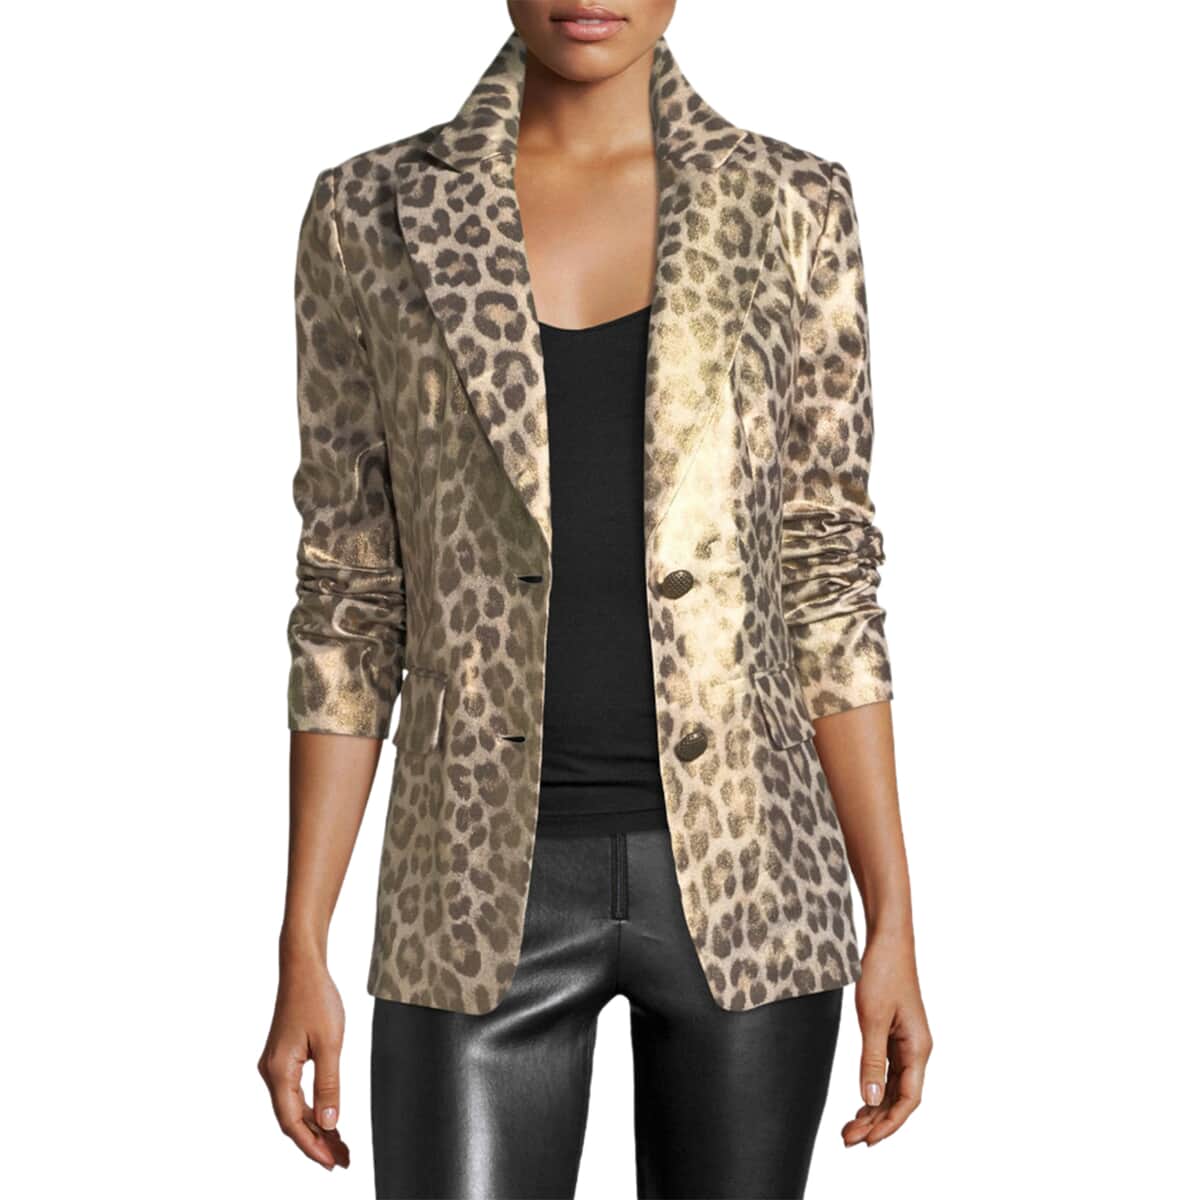 BEREK Tan Metallic Coated Animal Print Blazer Jacket For Women with Notch Collar – M image number 0